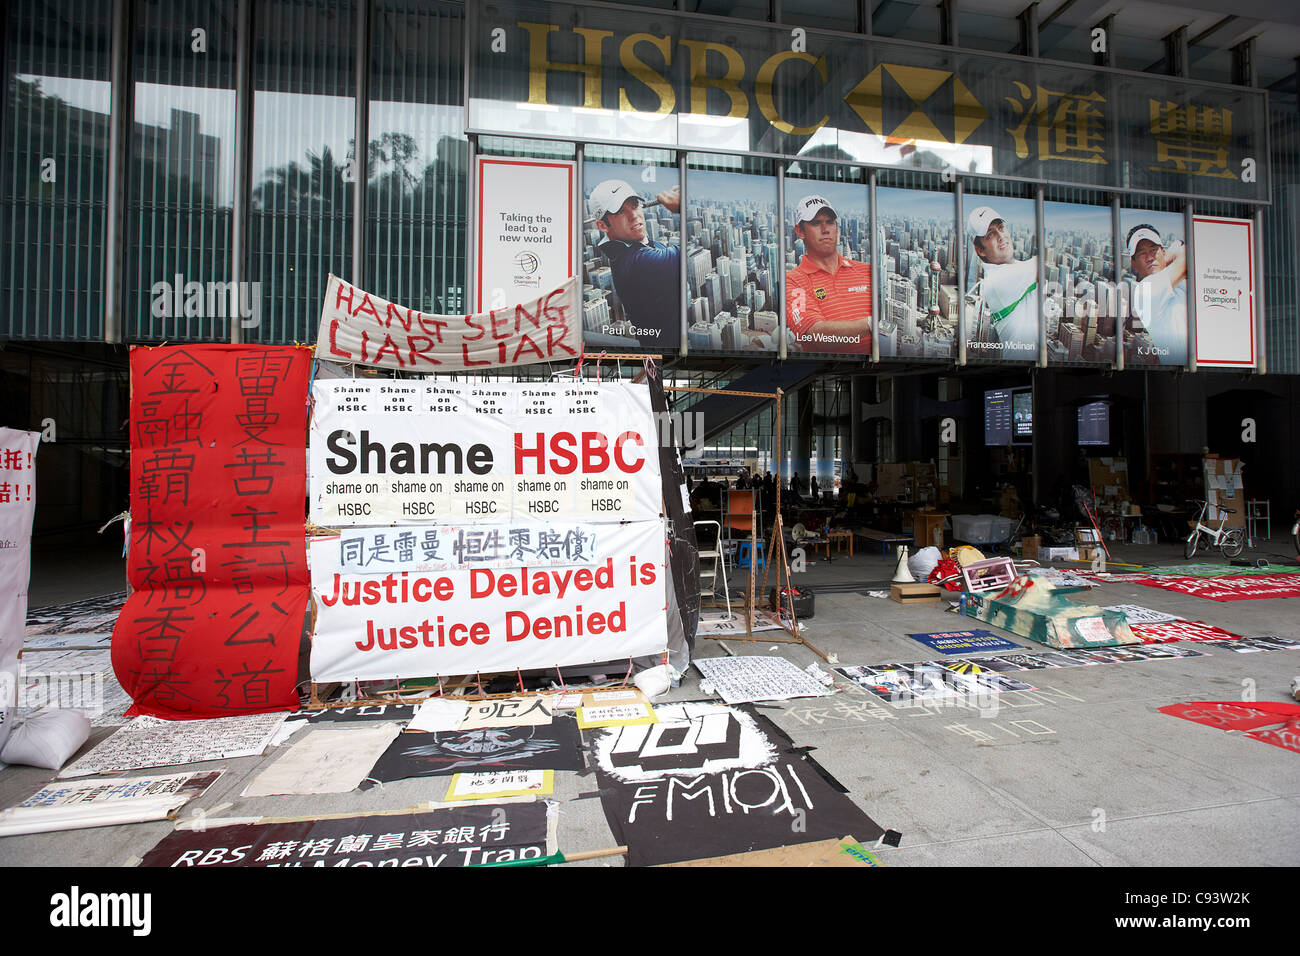 L'occuper le centre de manifestation dans la hall de la siège de la Banque HSBC dans les quartier central de Hong Kong, Chine, 11 Novembre 2011 Banque D'Images